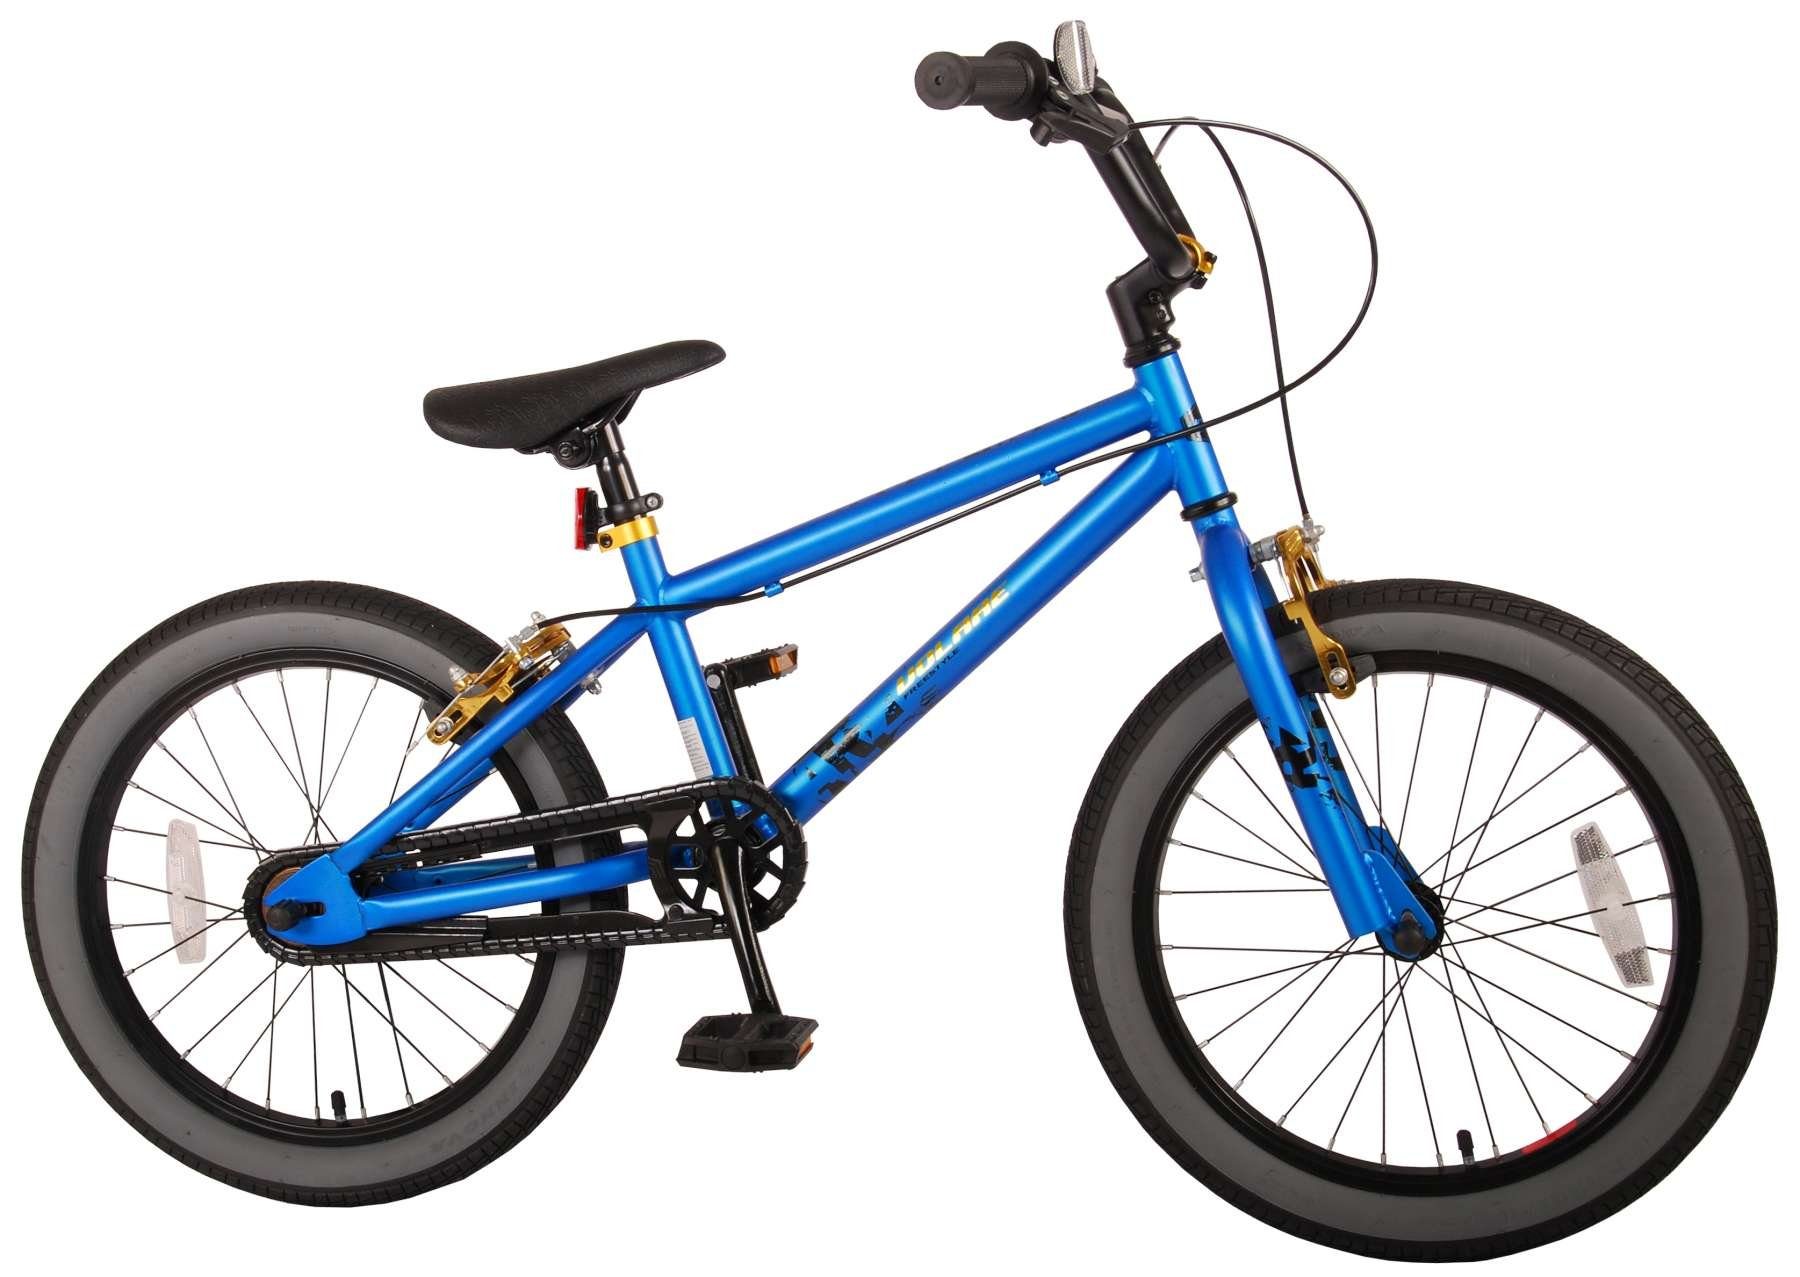 TPFSports Kinderfahrrad Volare Cool Rider 18 Zoll mit 2 Handbremsen, 1 Gang, (Jungsfahrrad - Jungen Kinderrad - ohne Schaltung - Sicherheitsgriffe), Kinder Fahrrad 18 Zoll - Jugend Fahrrad - Kinder Jugend Fahrrad Blau